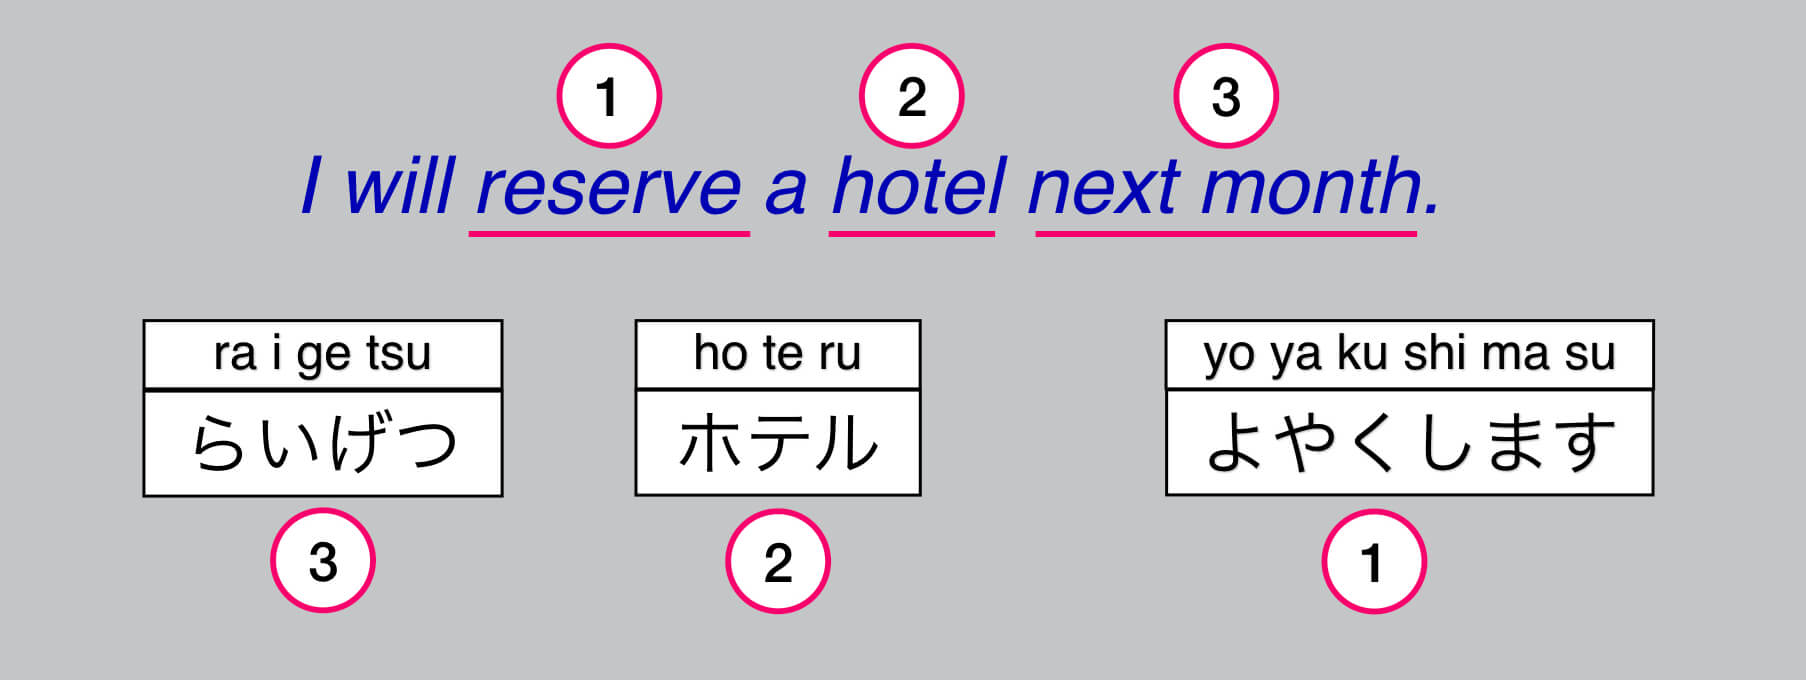 Translate English To Japanese 3 